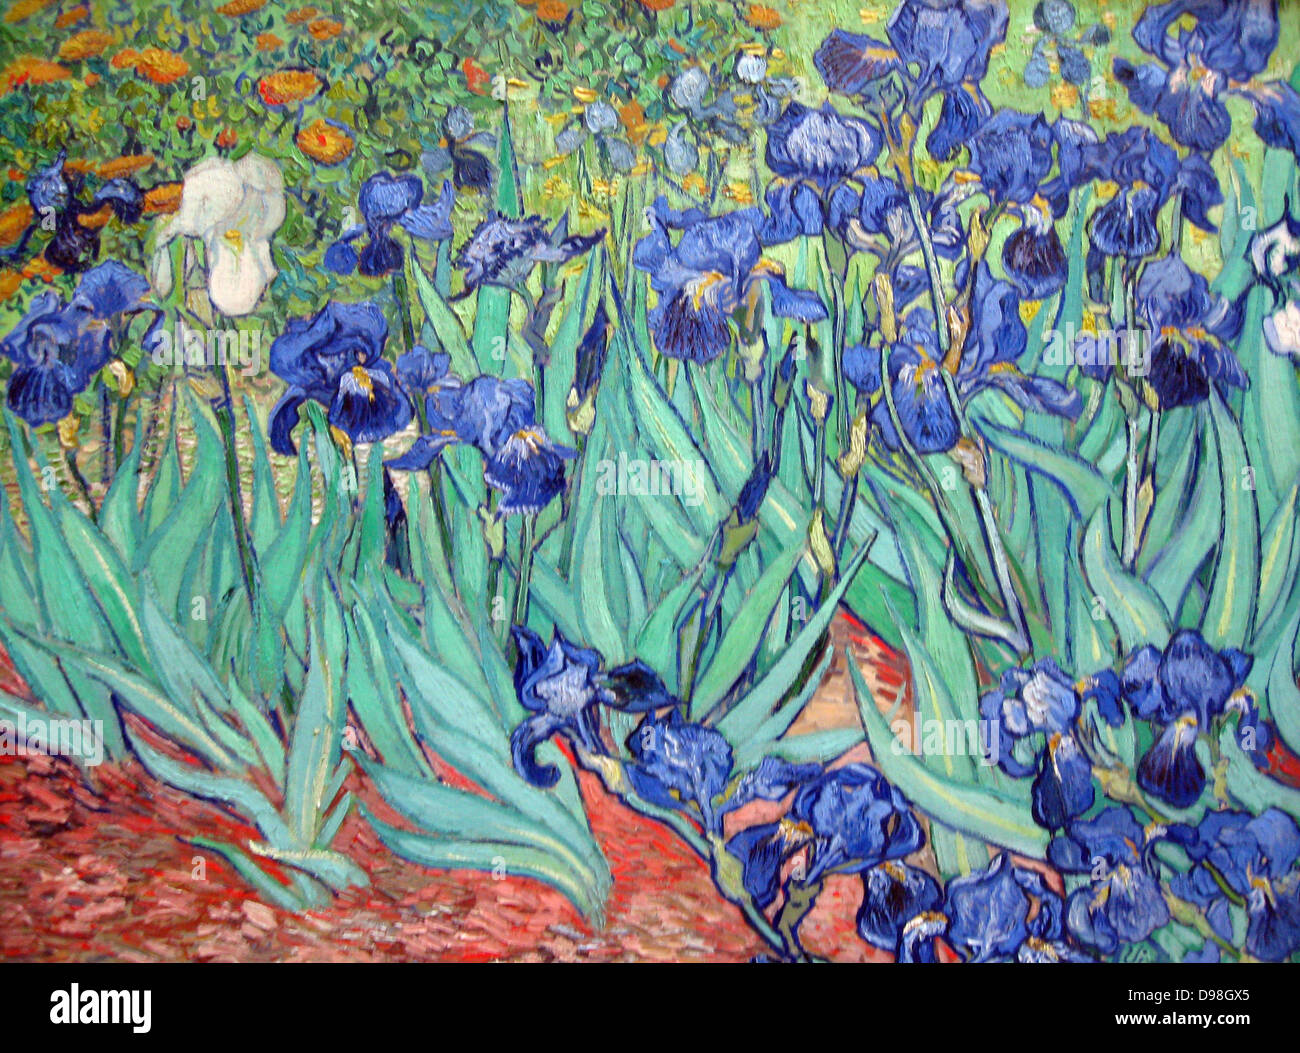 Iris est une peinture de Vincent van Gogh 1853 - 1890, peintre post-impressionniste hollandais. Iris a été peint alors que Vincent van Gogh vivait à l'asile à Saint Paul-de-Mausole à Saint-Rémy-de-Provence, France, en 1890 Banque D'Images